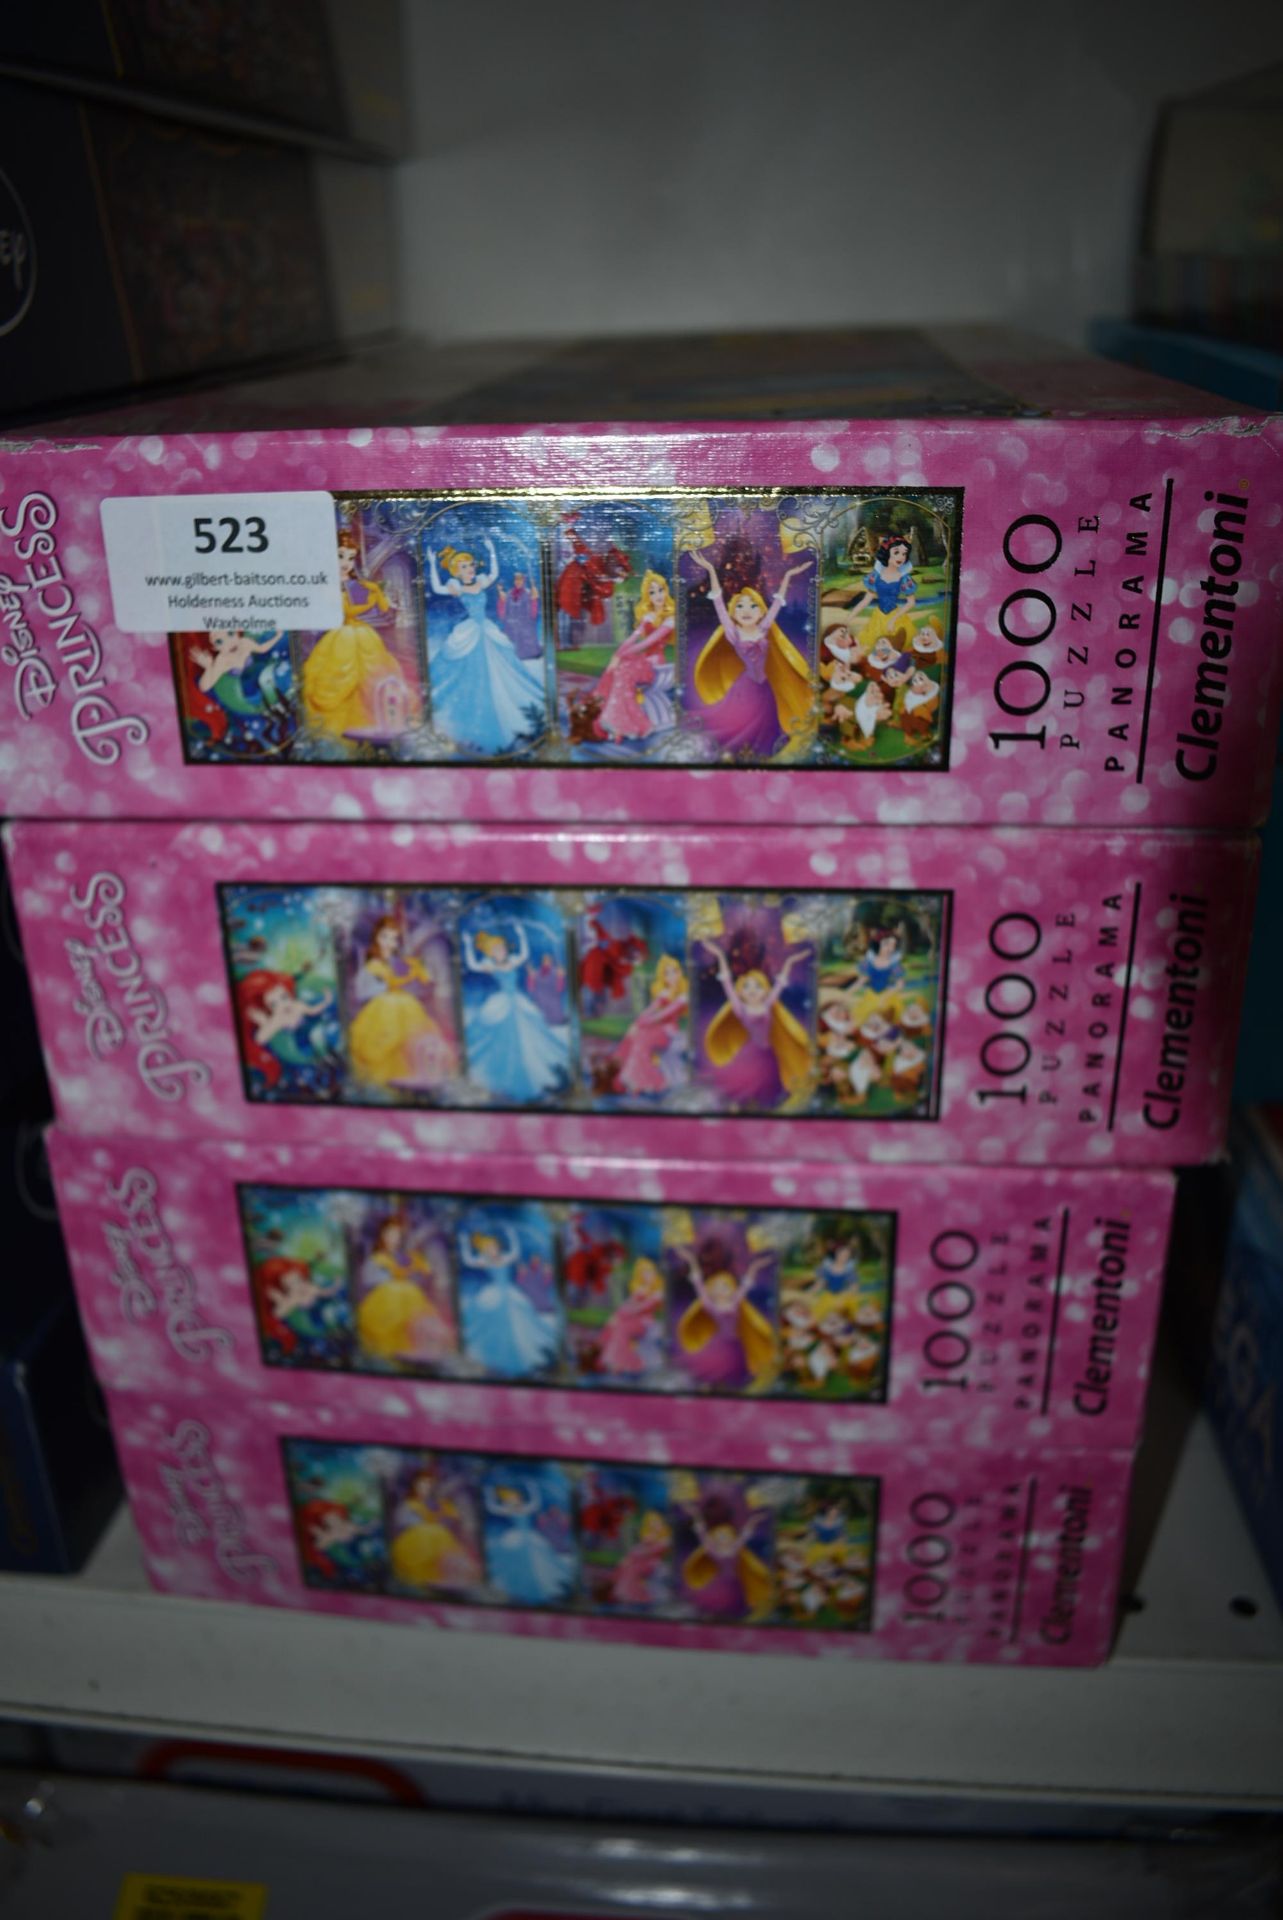 Four Disney Princess Panorama 1000pc Jigsaw Puzzles - Image 3 of 4